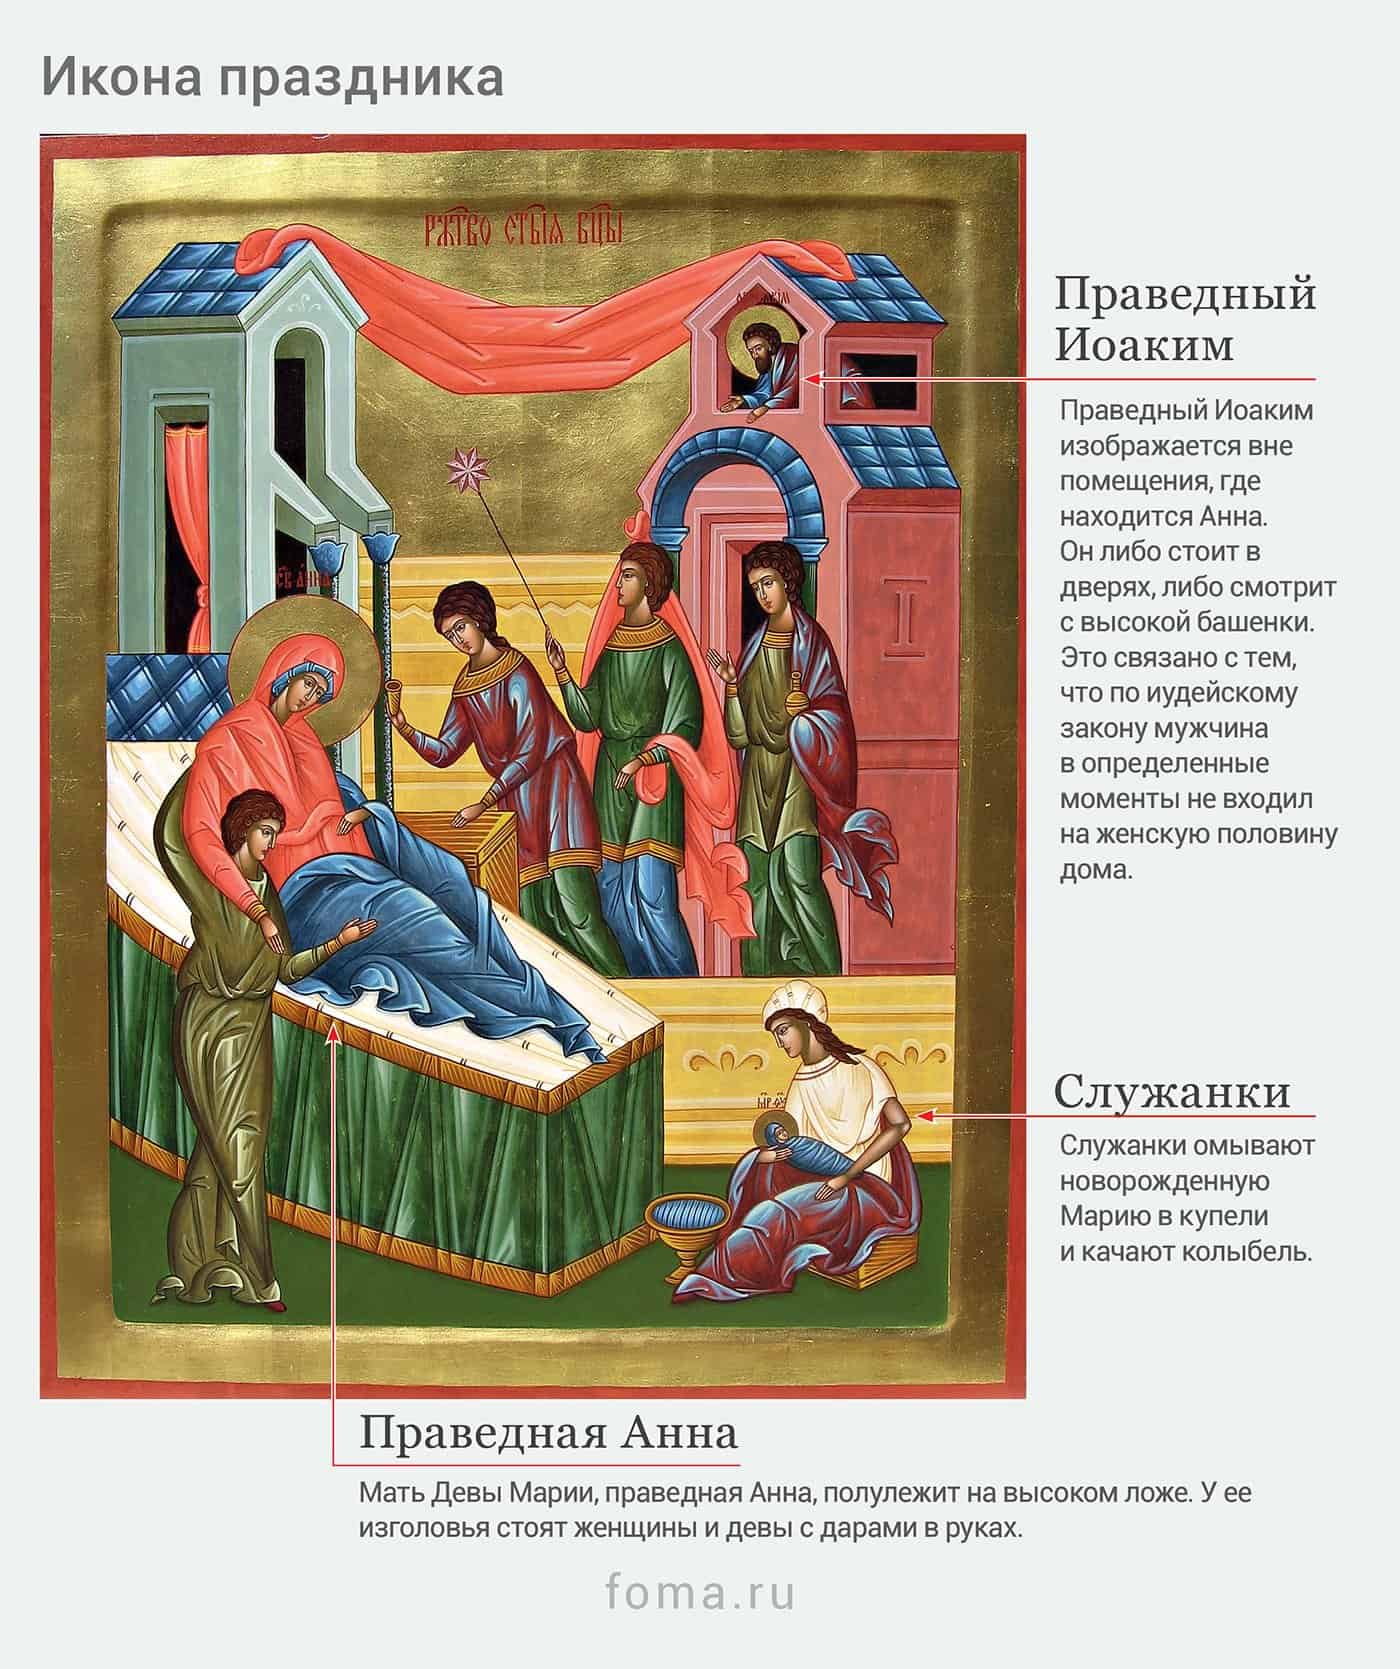 Рождество Пресвятой Богородицы: коротко о празднике – Православный журнал «Фома»